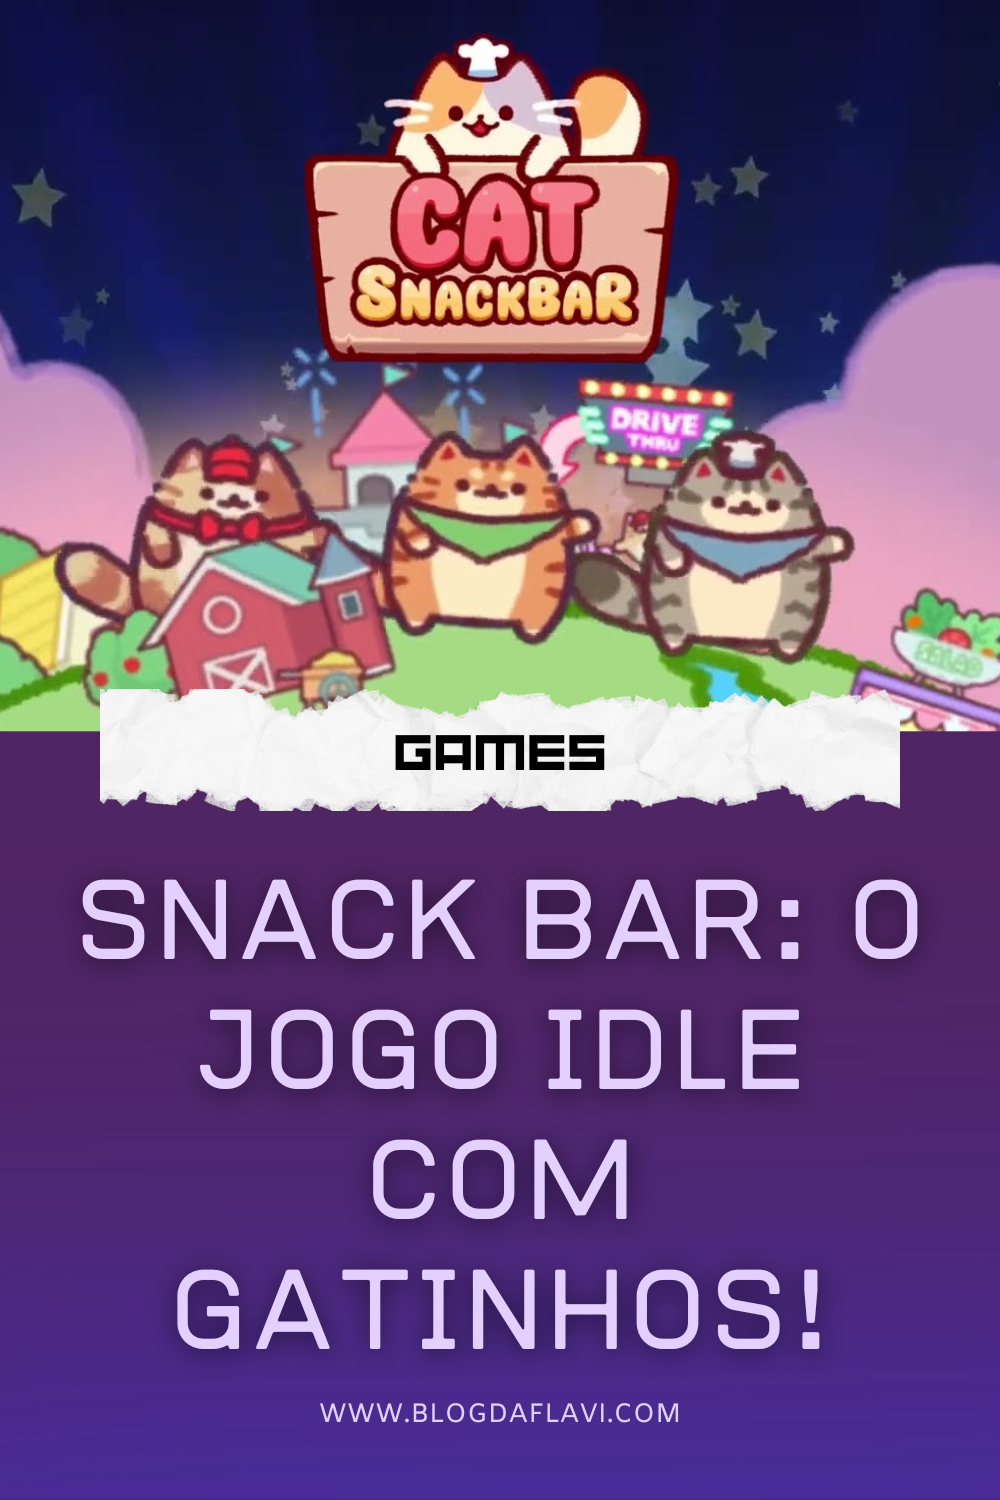 Snack Bar: O Jogo Idle com Gatinhos!